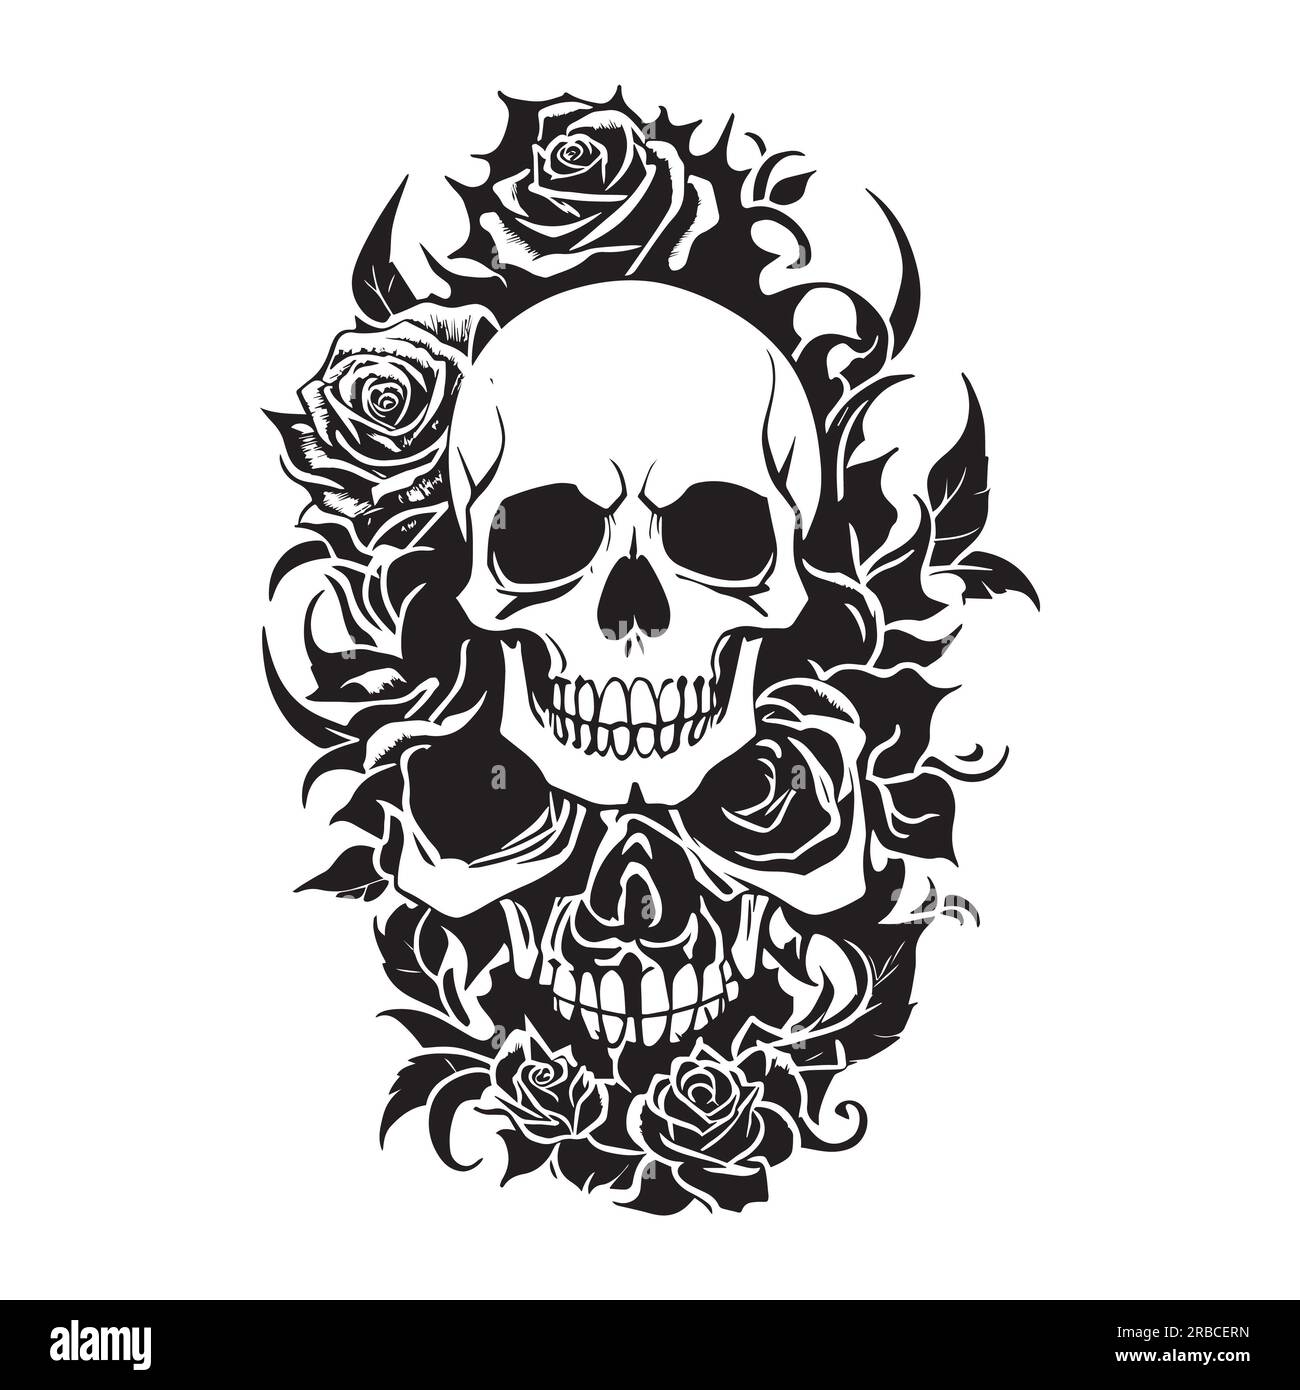 Schwarz-weißer menschlicher Schädel und Rosen, Illustration von menschlichem Schädel und Rosen für Tätowierung, Aufdruck, T-Shirt. Stockfoto